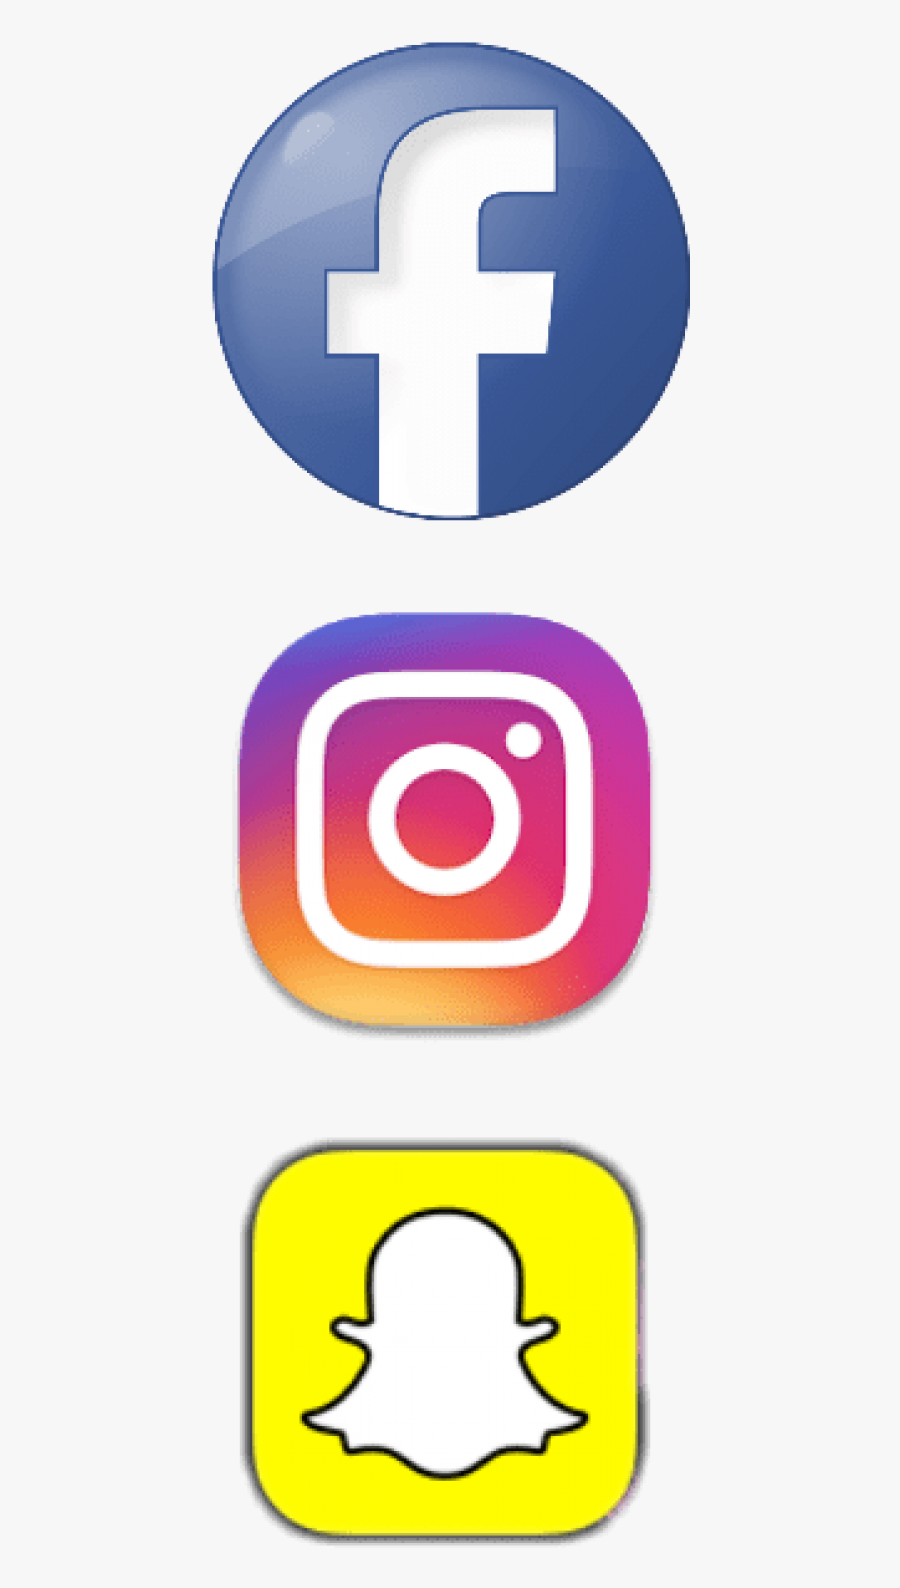 Free Png Download Facebook Instagram Snapchat Logo - Transparent Background Facebook And Instagram Logo, Transparent Clipart